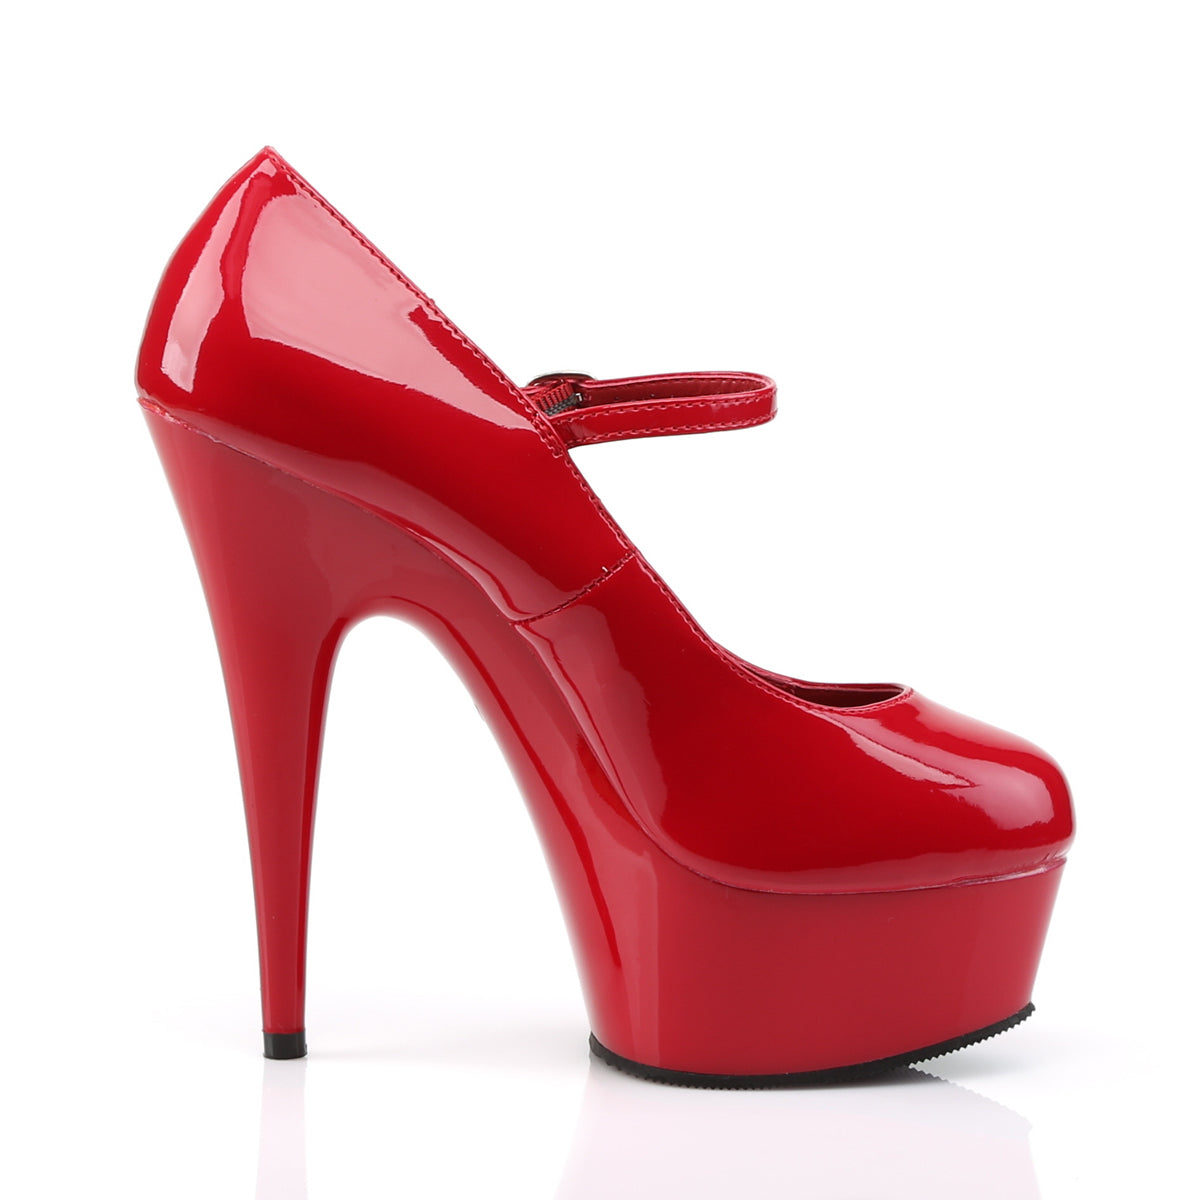 Pleaser Sandali da donna DELIGHT-687 rosso / rosso